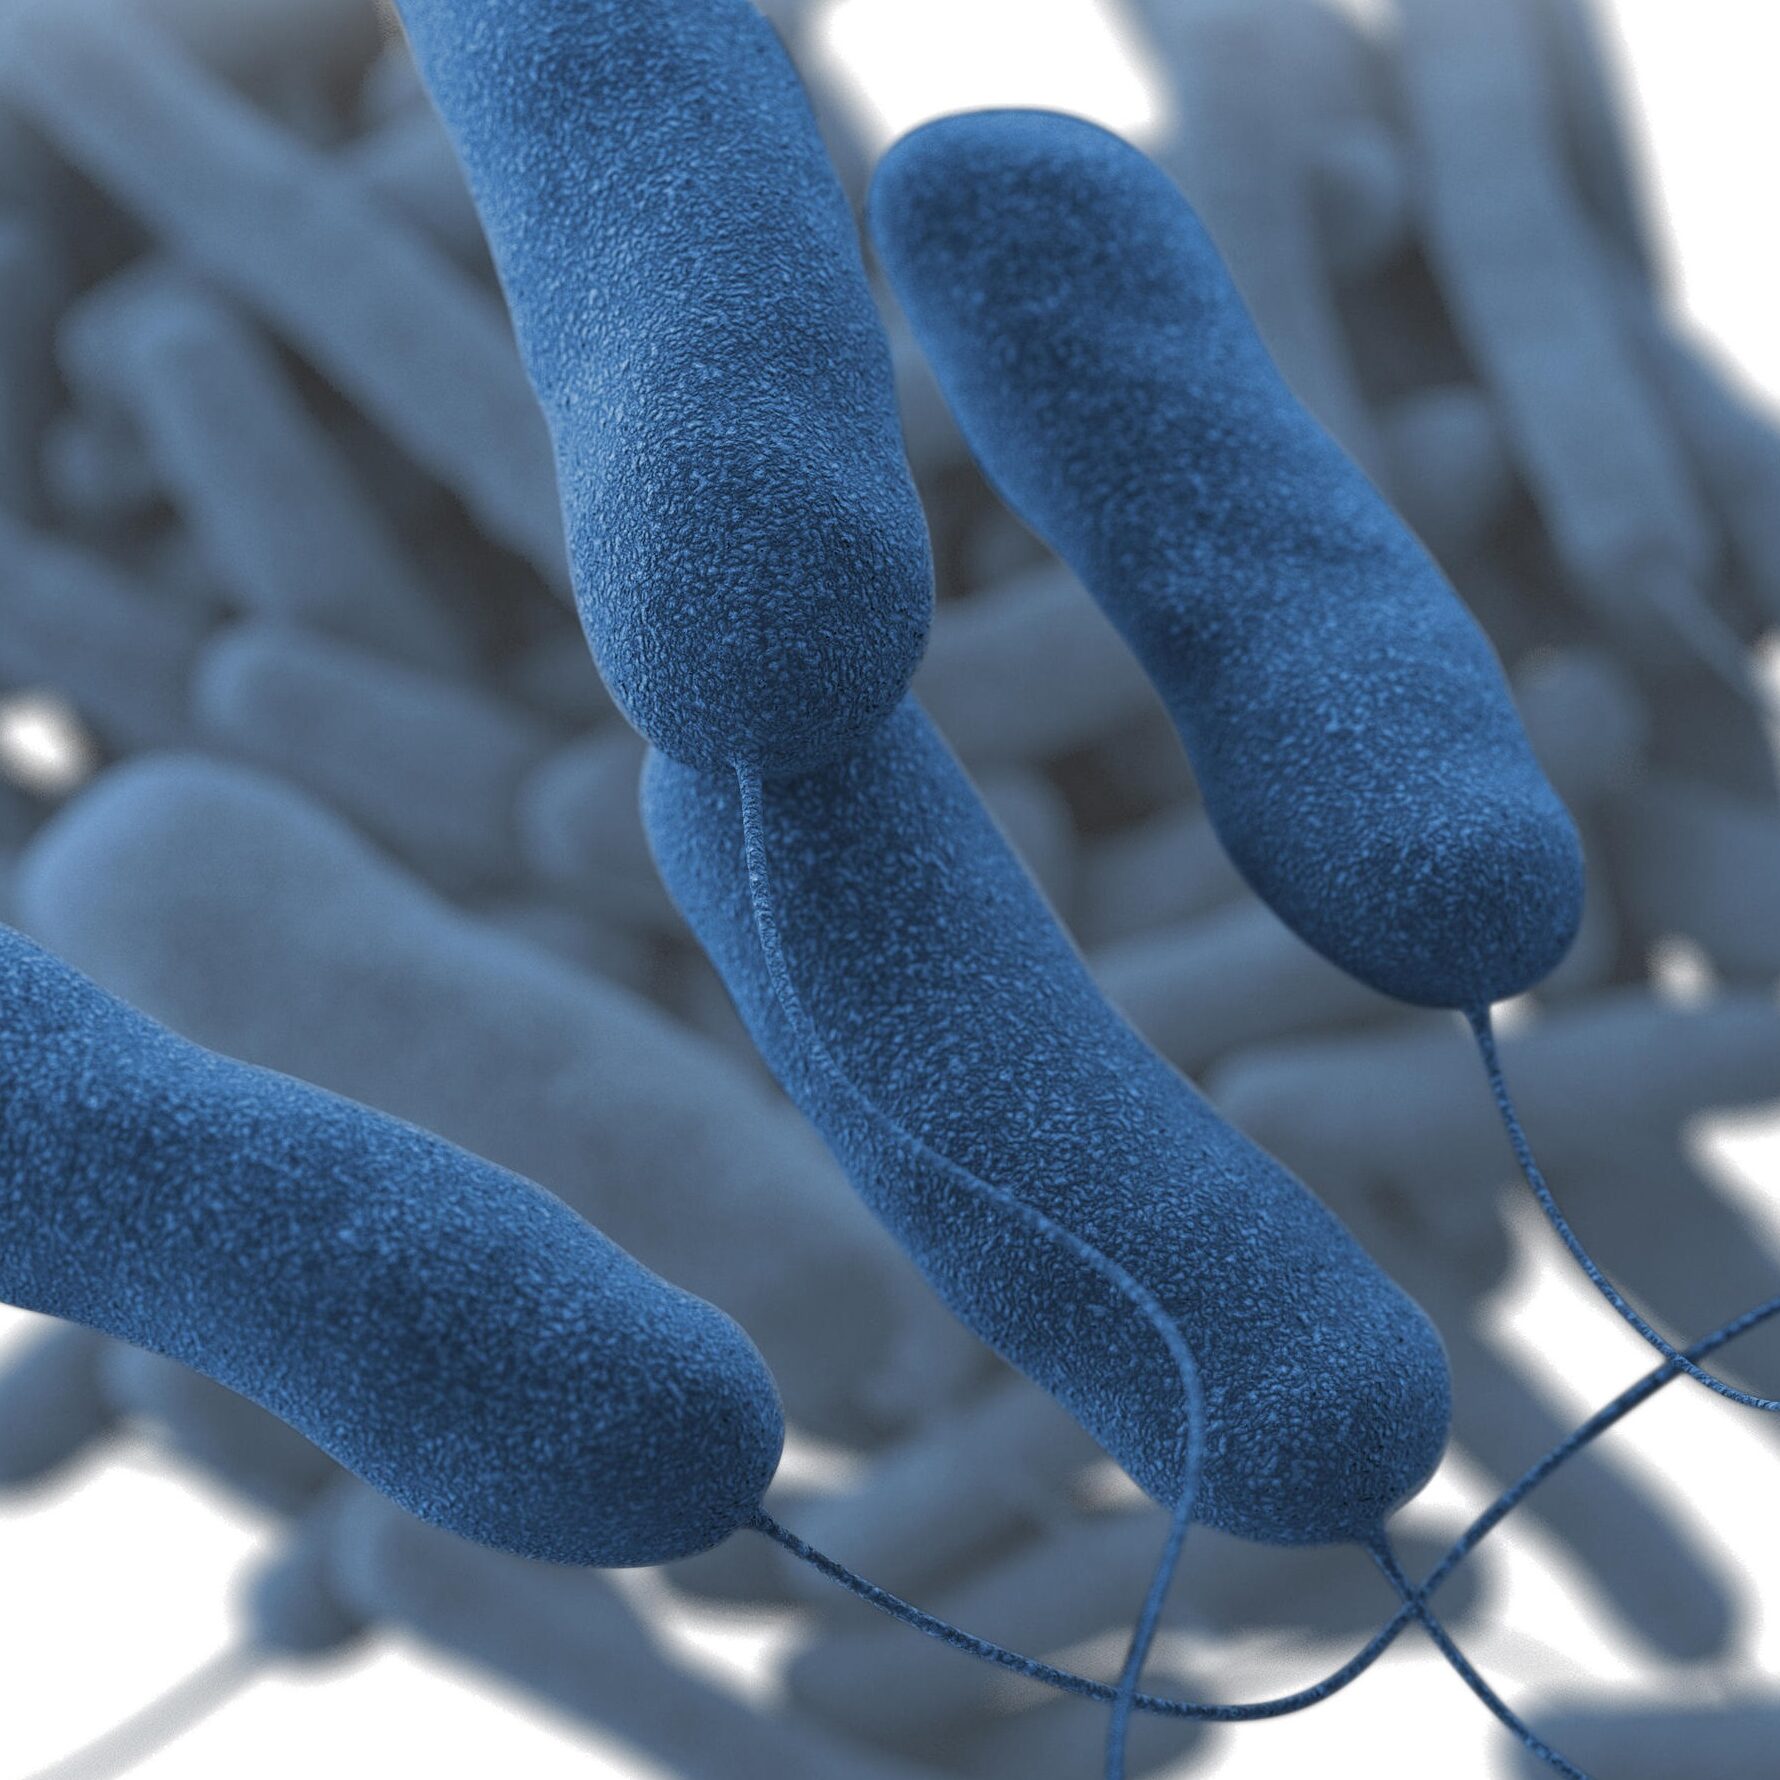 Legionella bacteria pic. 29.05